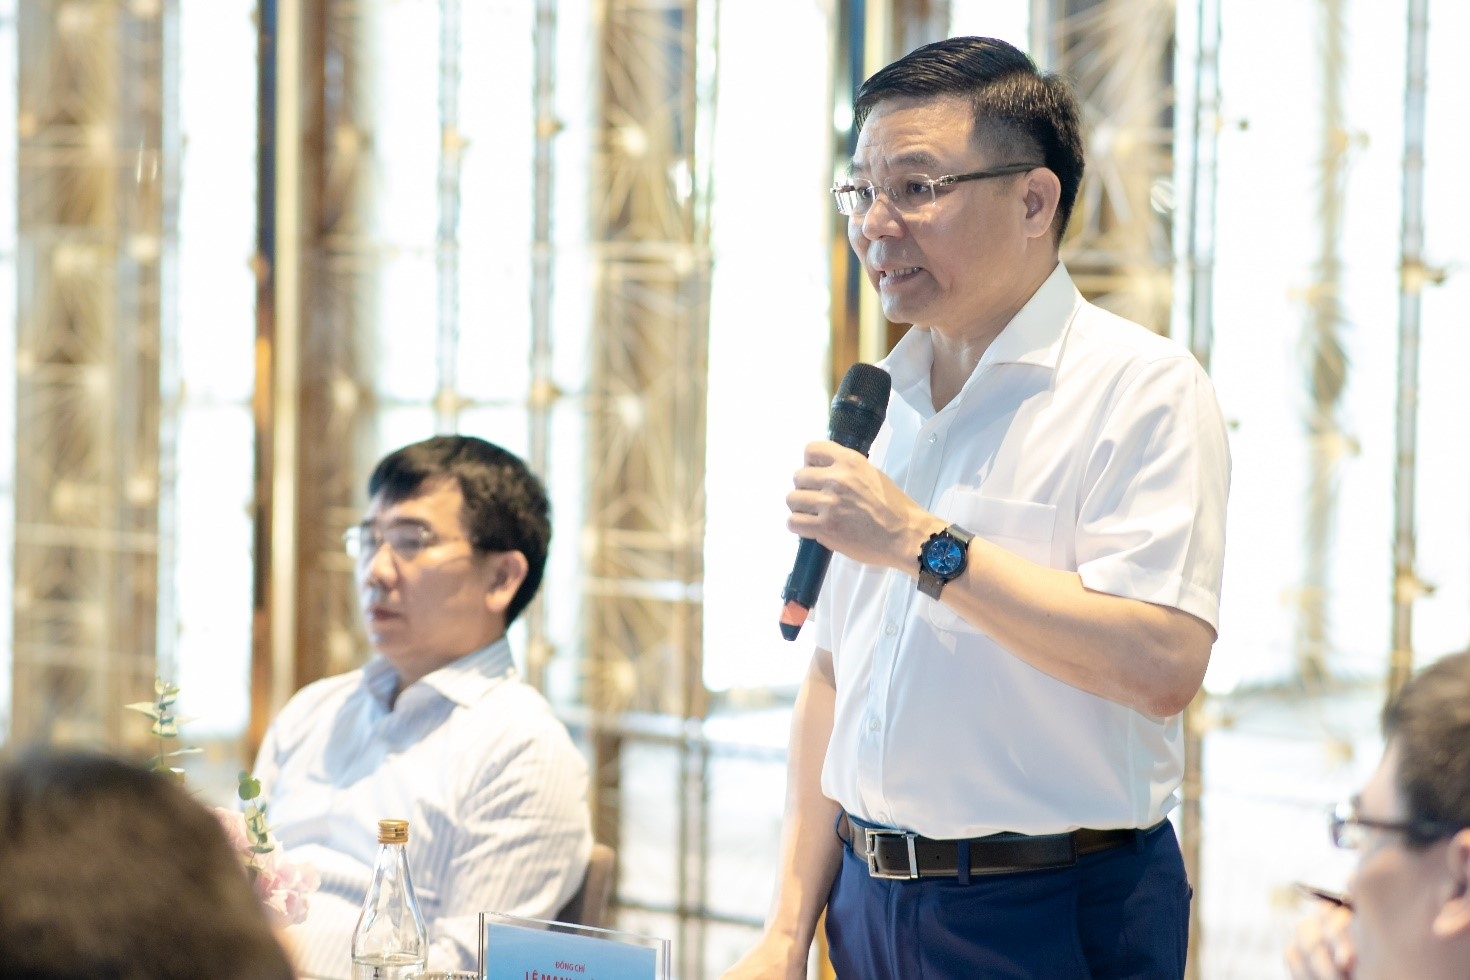 Tổng Giám đốc Petrovietnam Lê Mạnh Hùng phát biểu chỉ đạo